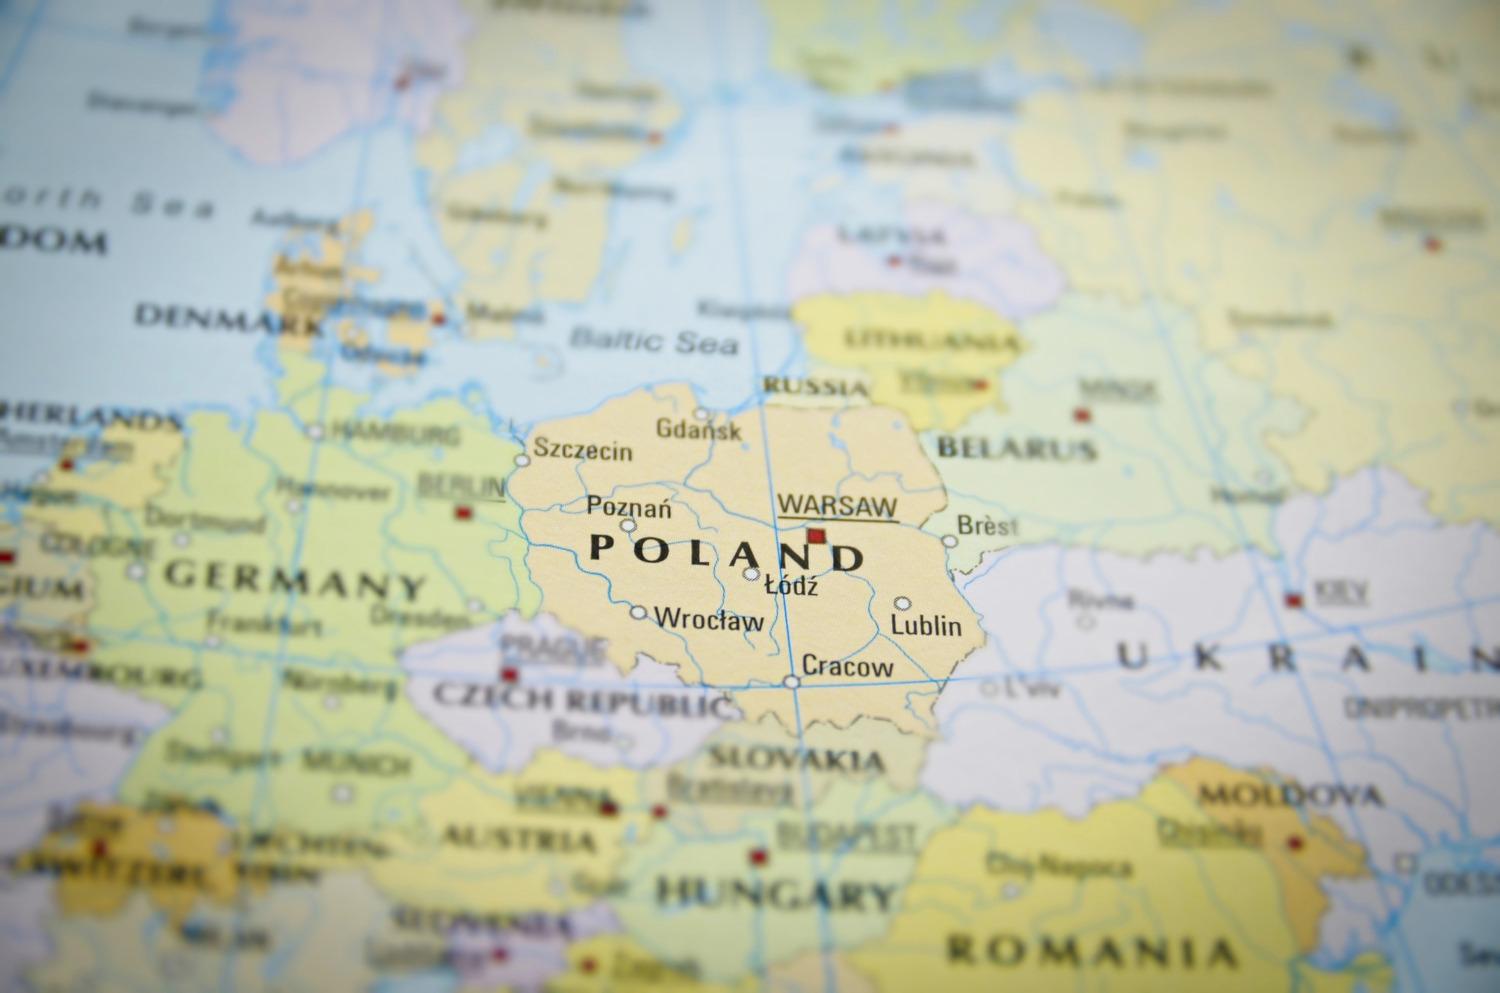 Журналісти здобули доступ до сценарію військового нападу на Польщу та Європу - ЗМІ 3